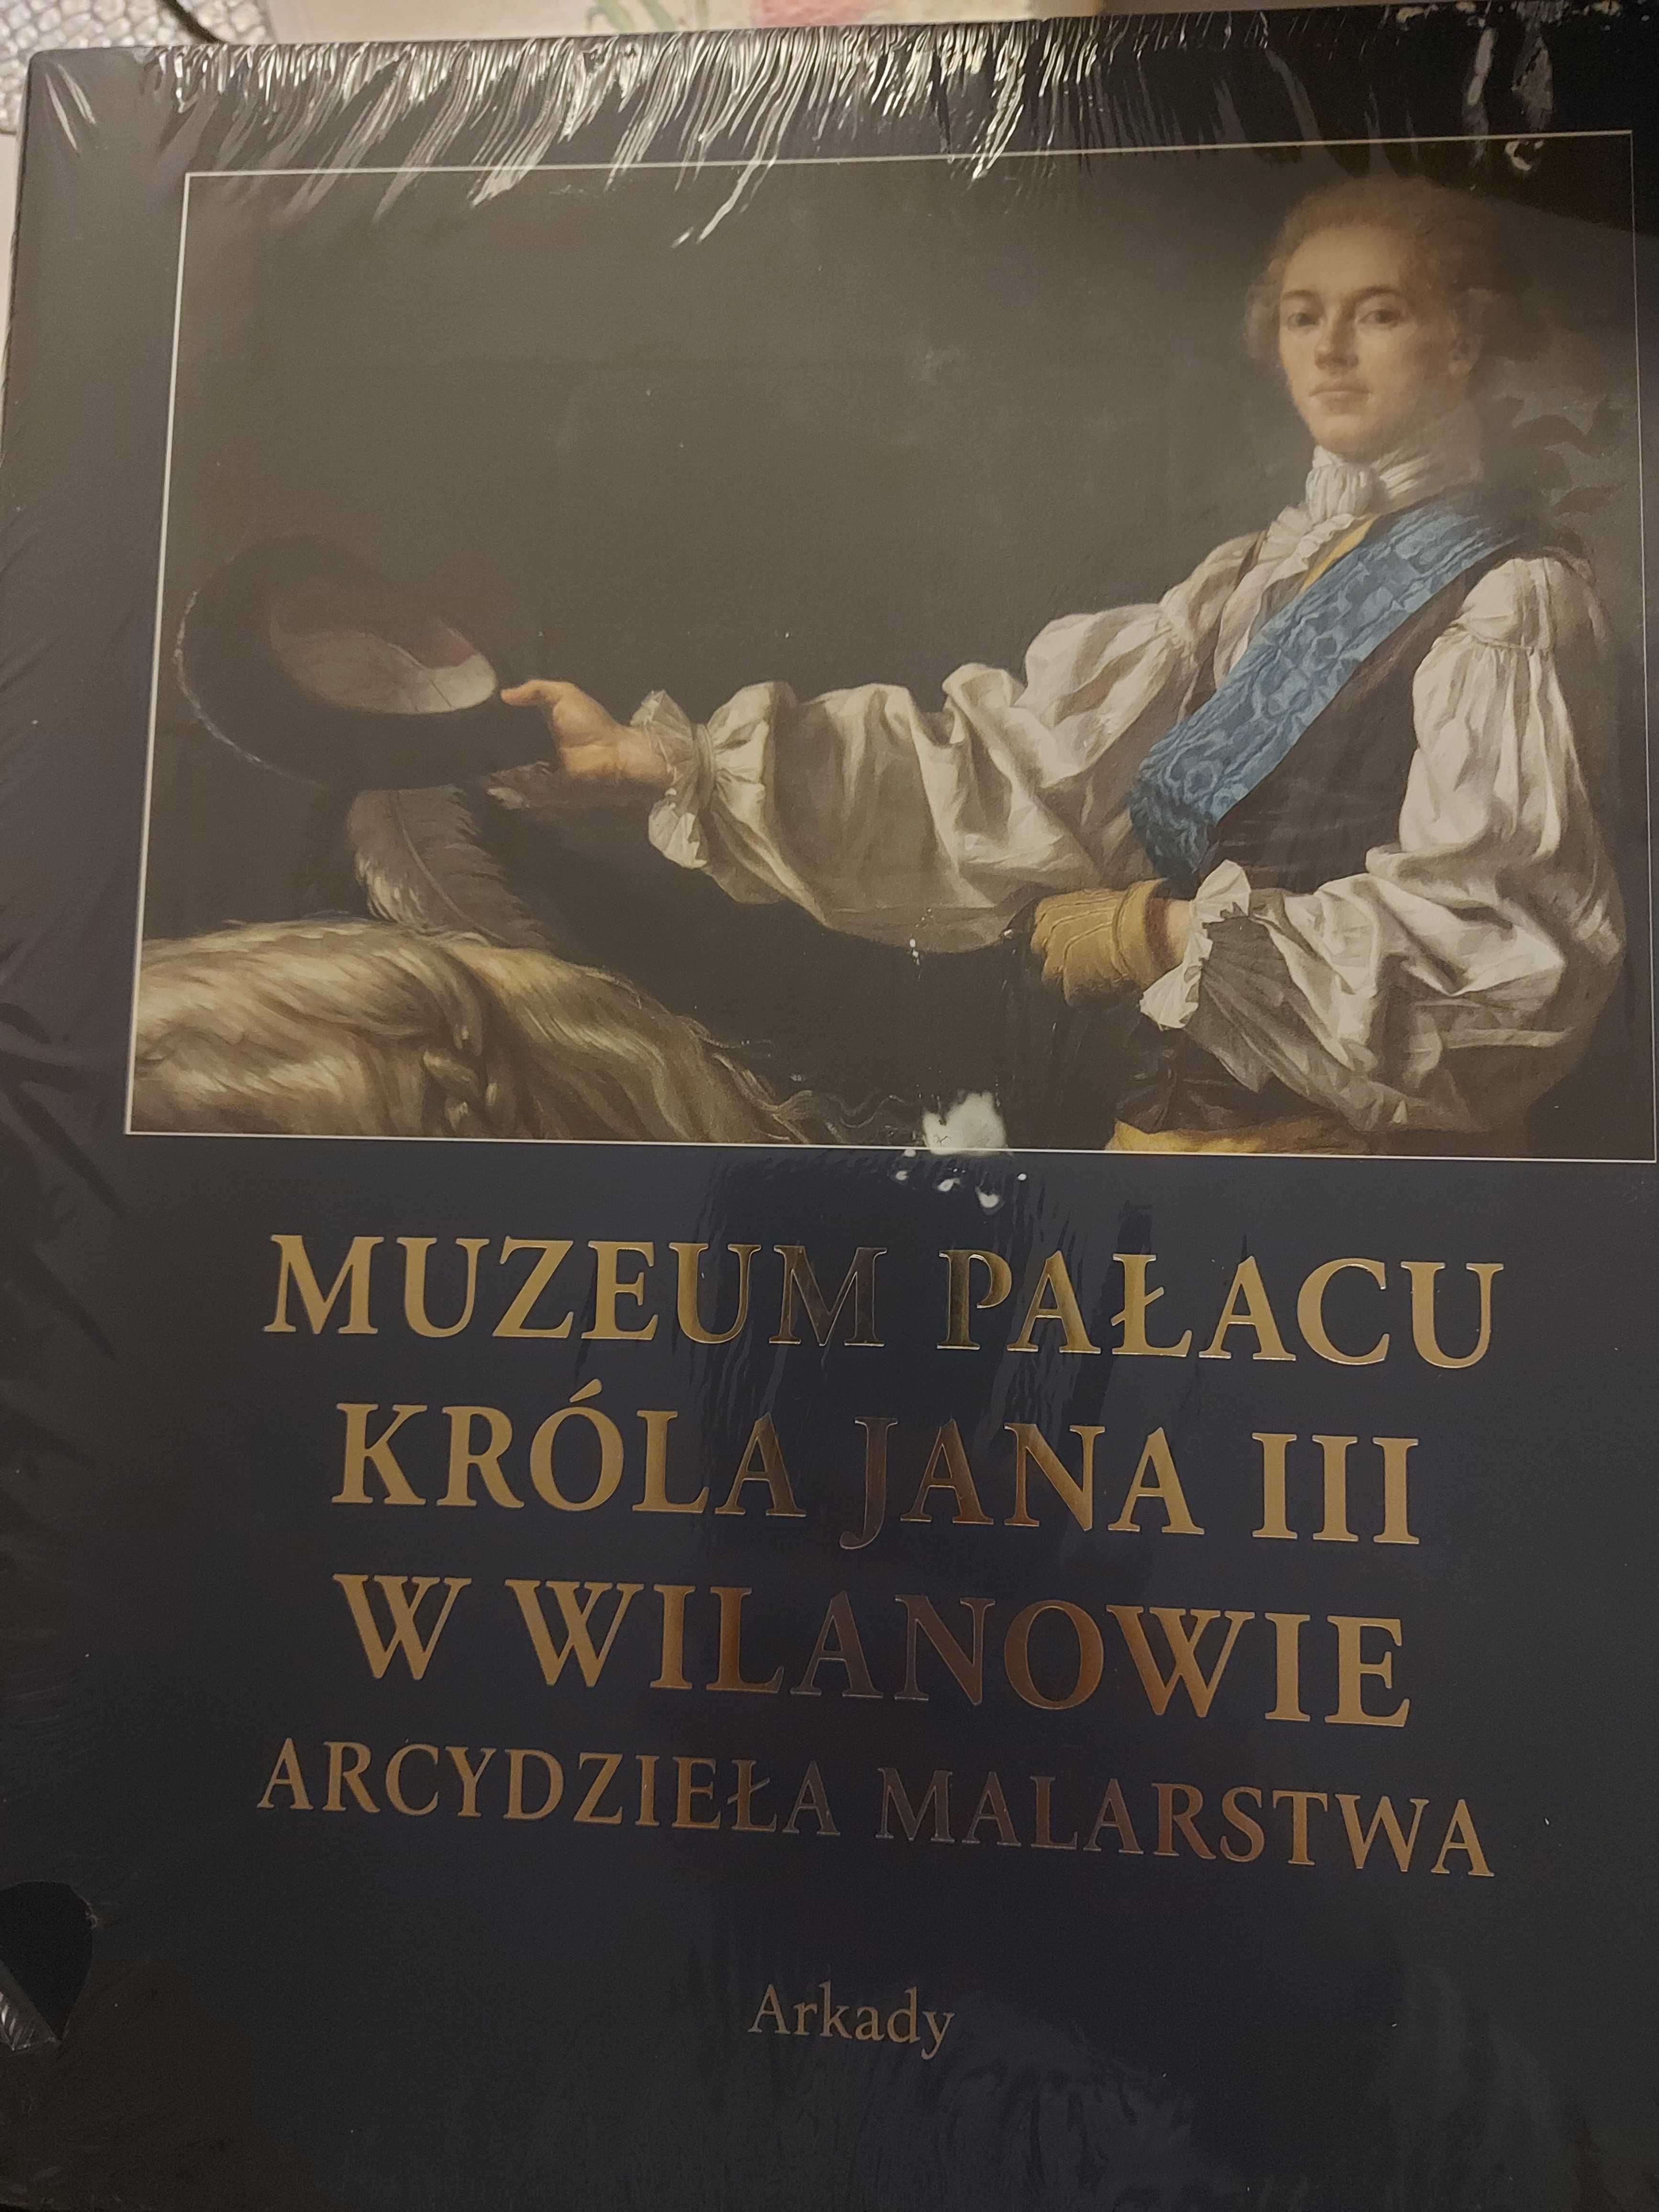 Muzeum pałacu króla jana III w Wilanowie książka, nowa